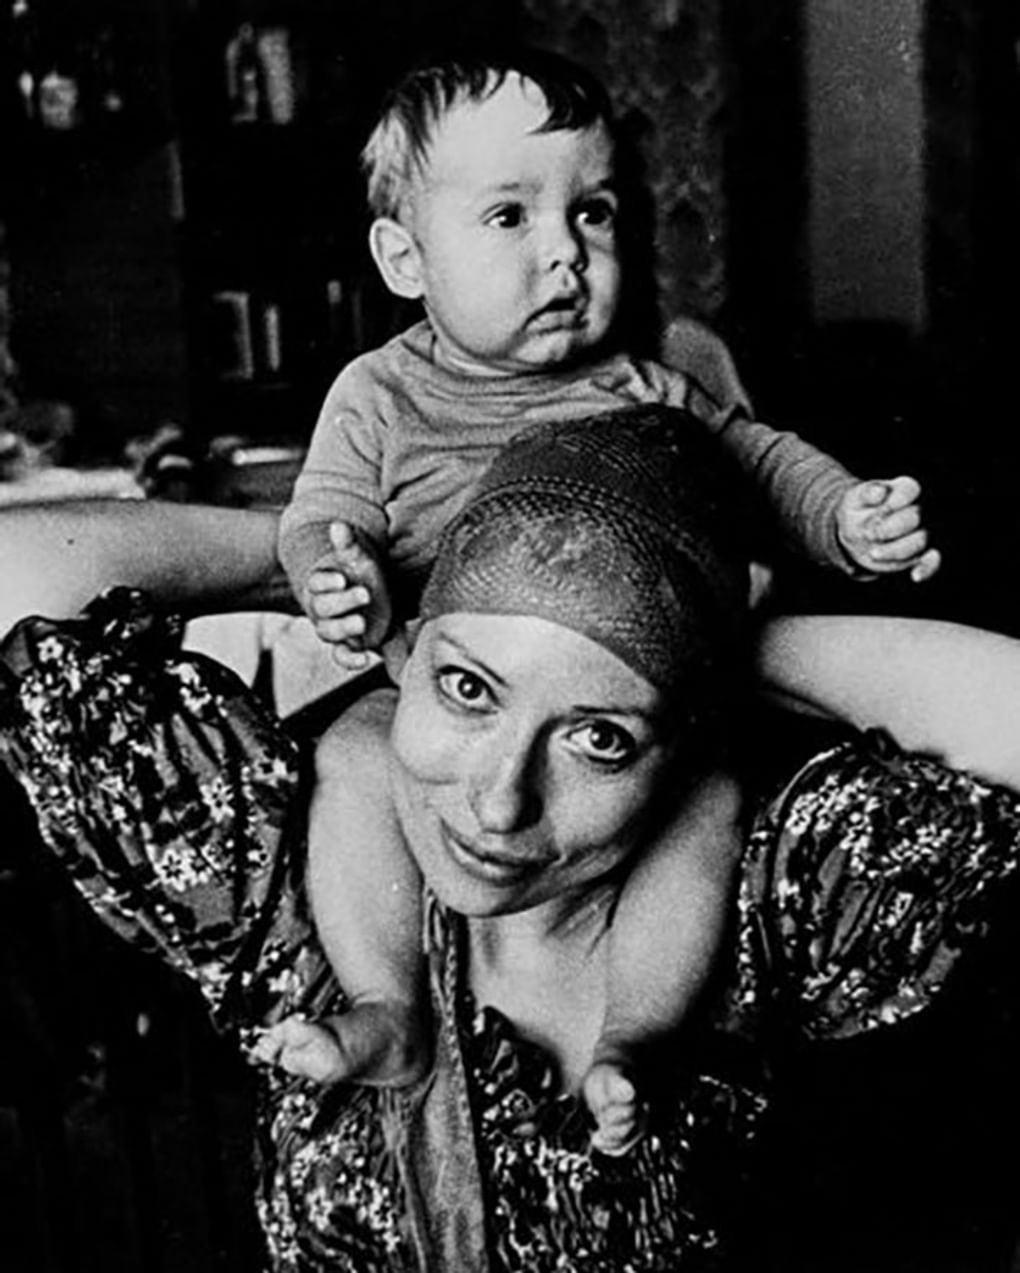 Актриса Инна Чурикова с сыном Иваном. 1979 год. Фотография: Николай Гнисюк / Государственный музейно-выставочный центр РОСФОТО, Санкт-Петербург